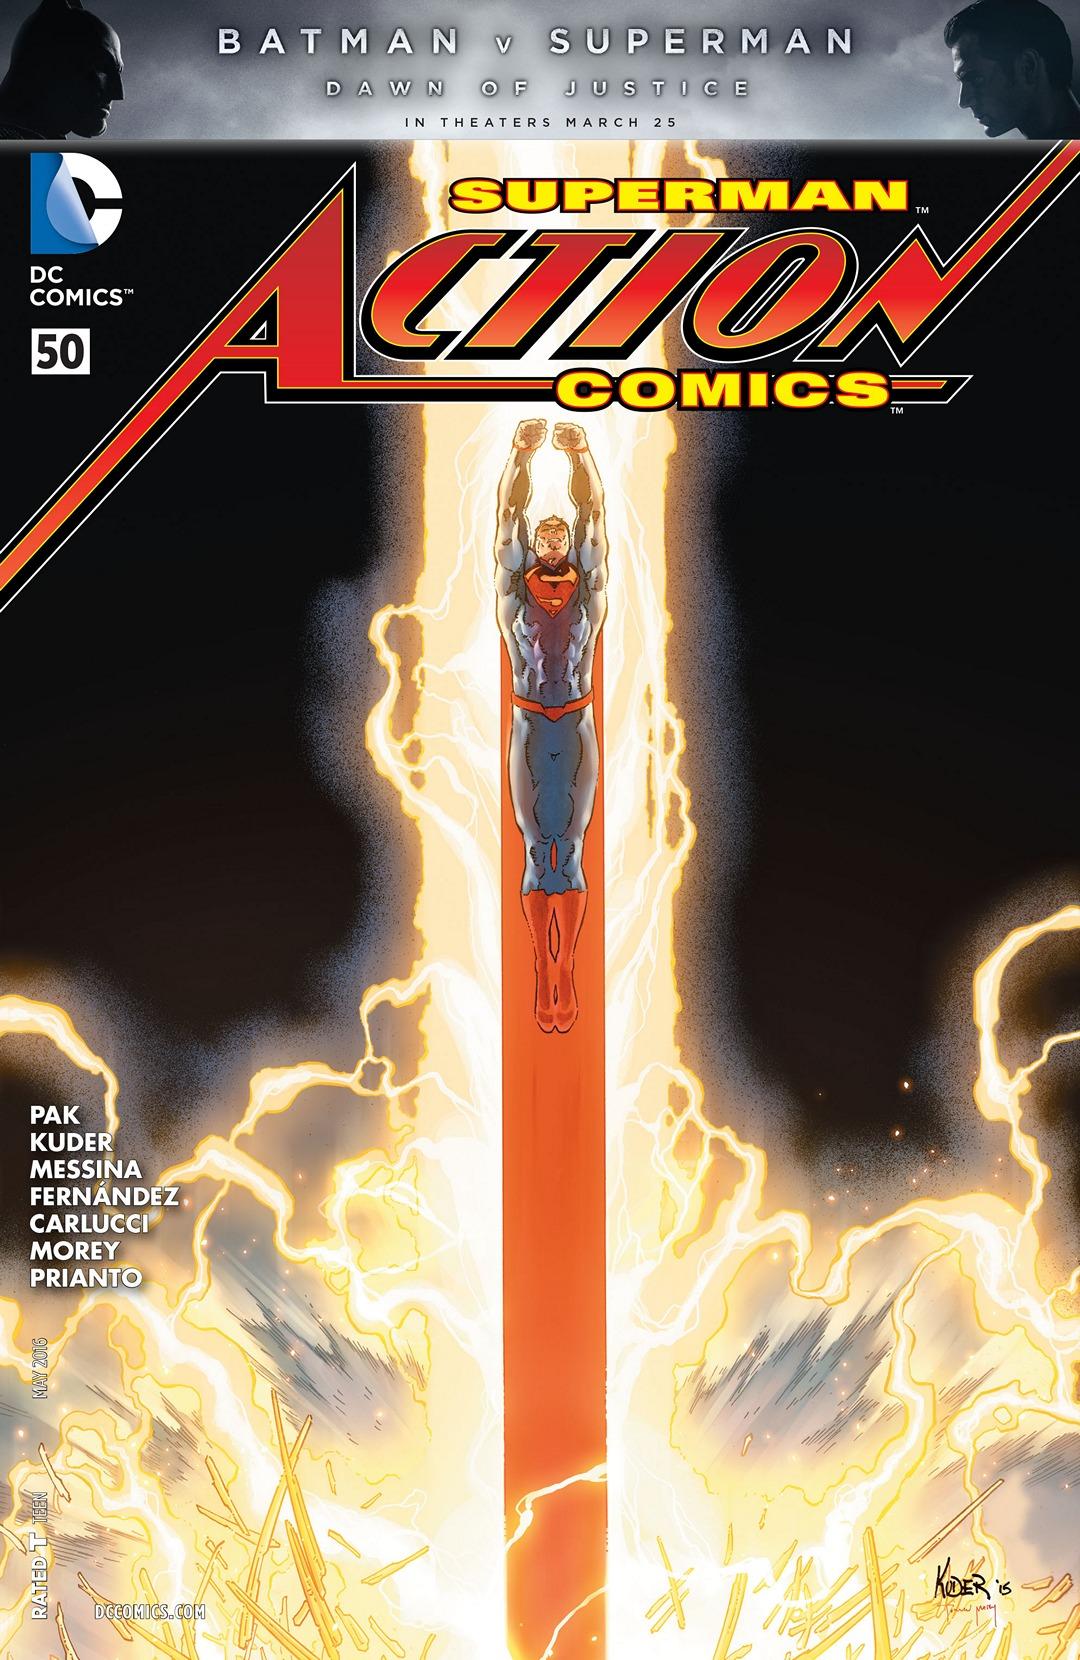 Action Comics Vol. 2 #50